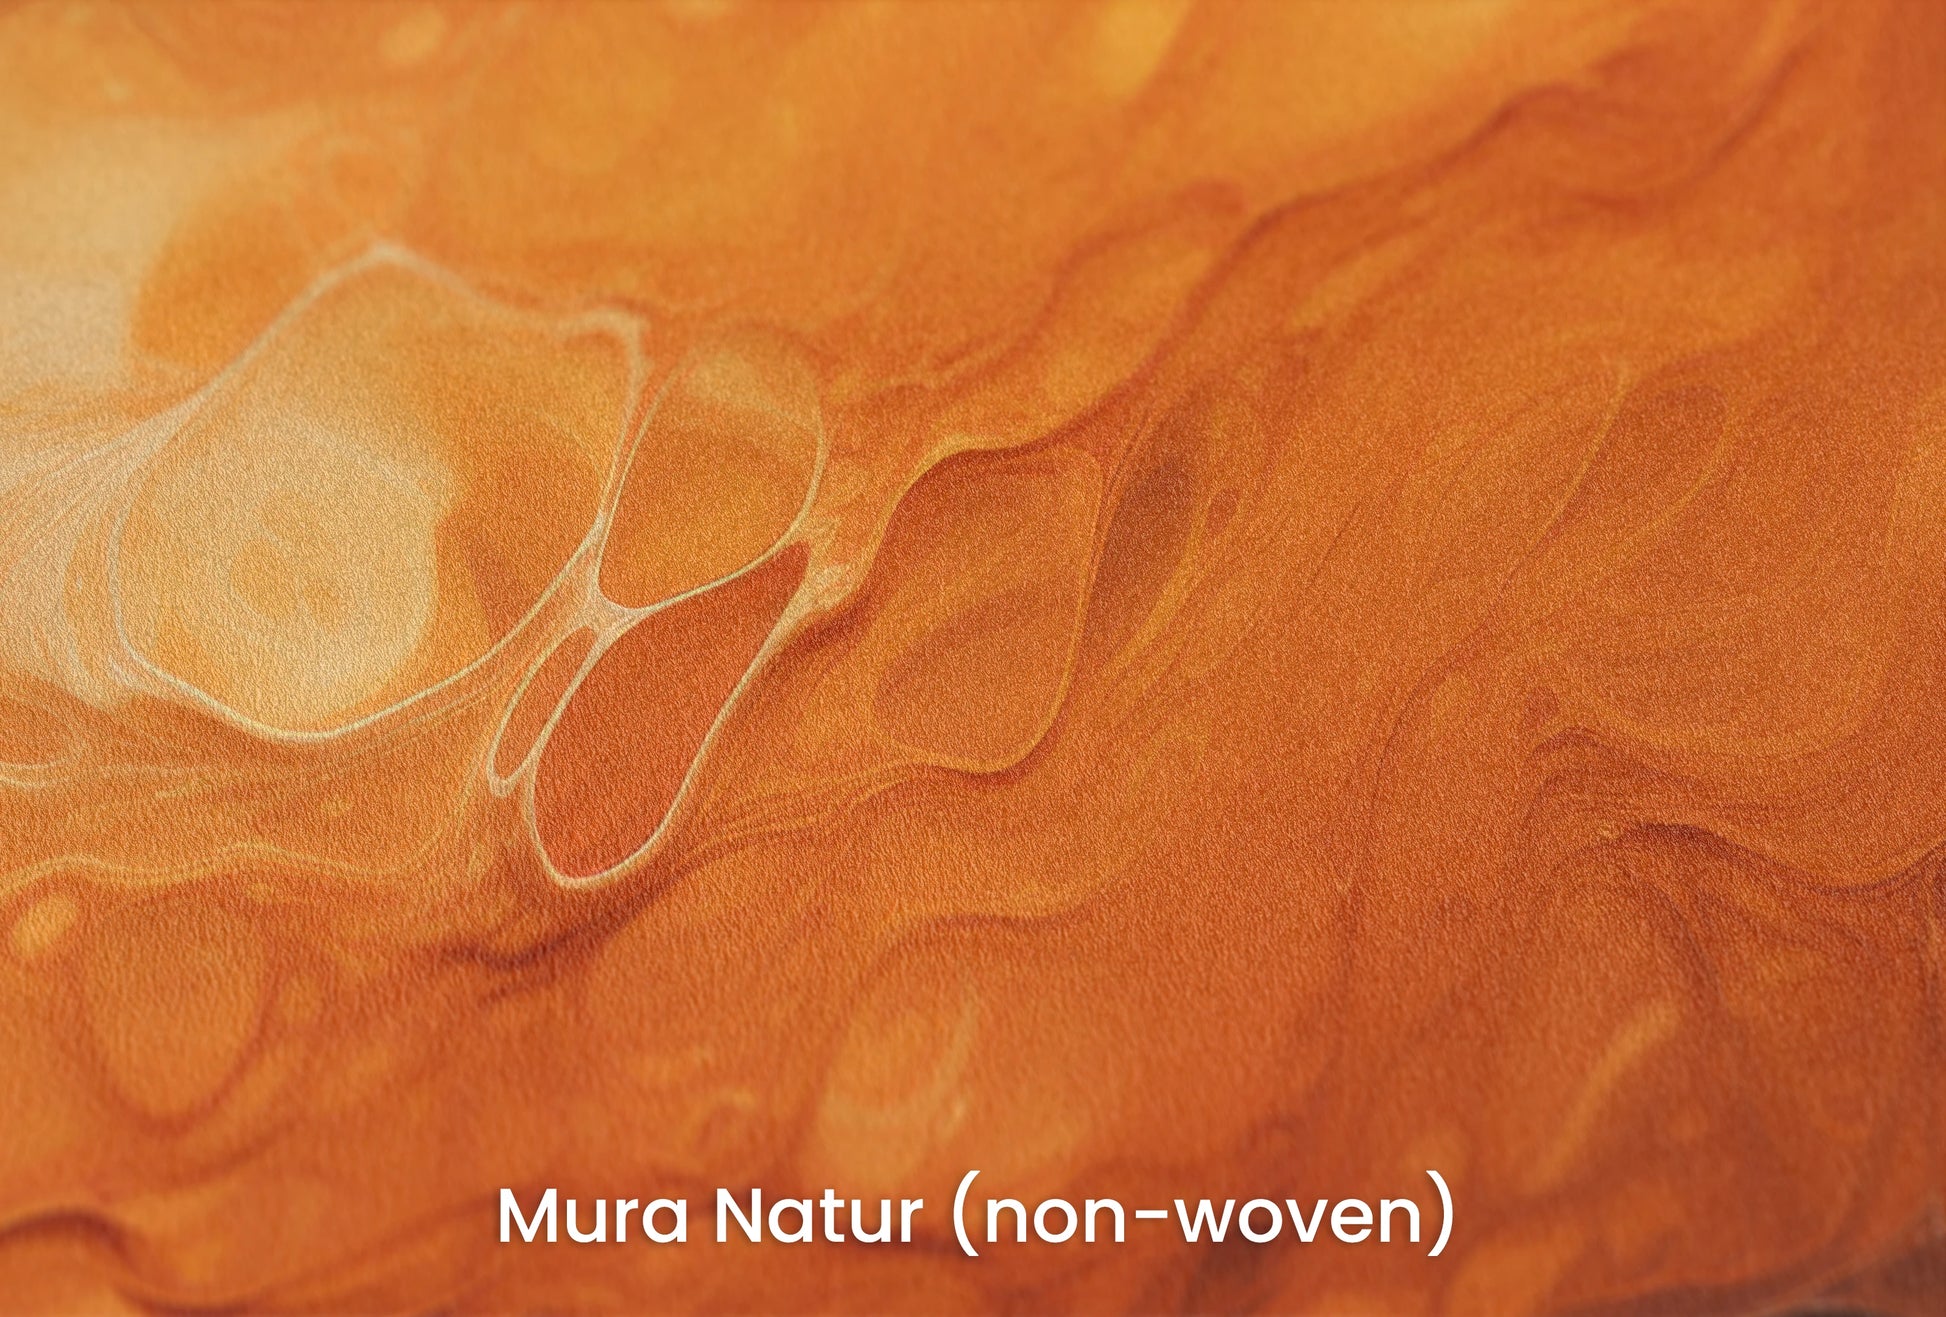 Zbliżenie na artystyczną fototapetę o nazwie Mercurial Craters na podłożu Mura Natur (non-woven) - naturalne i ekologiczne podłoże.